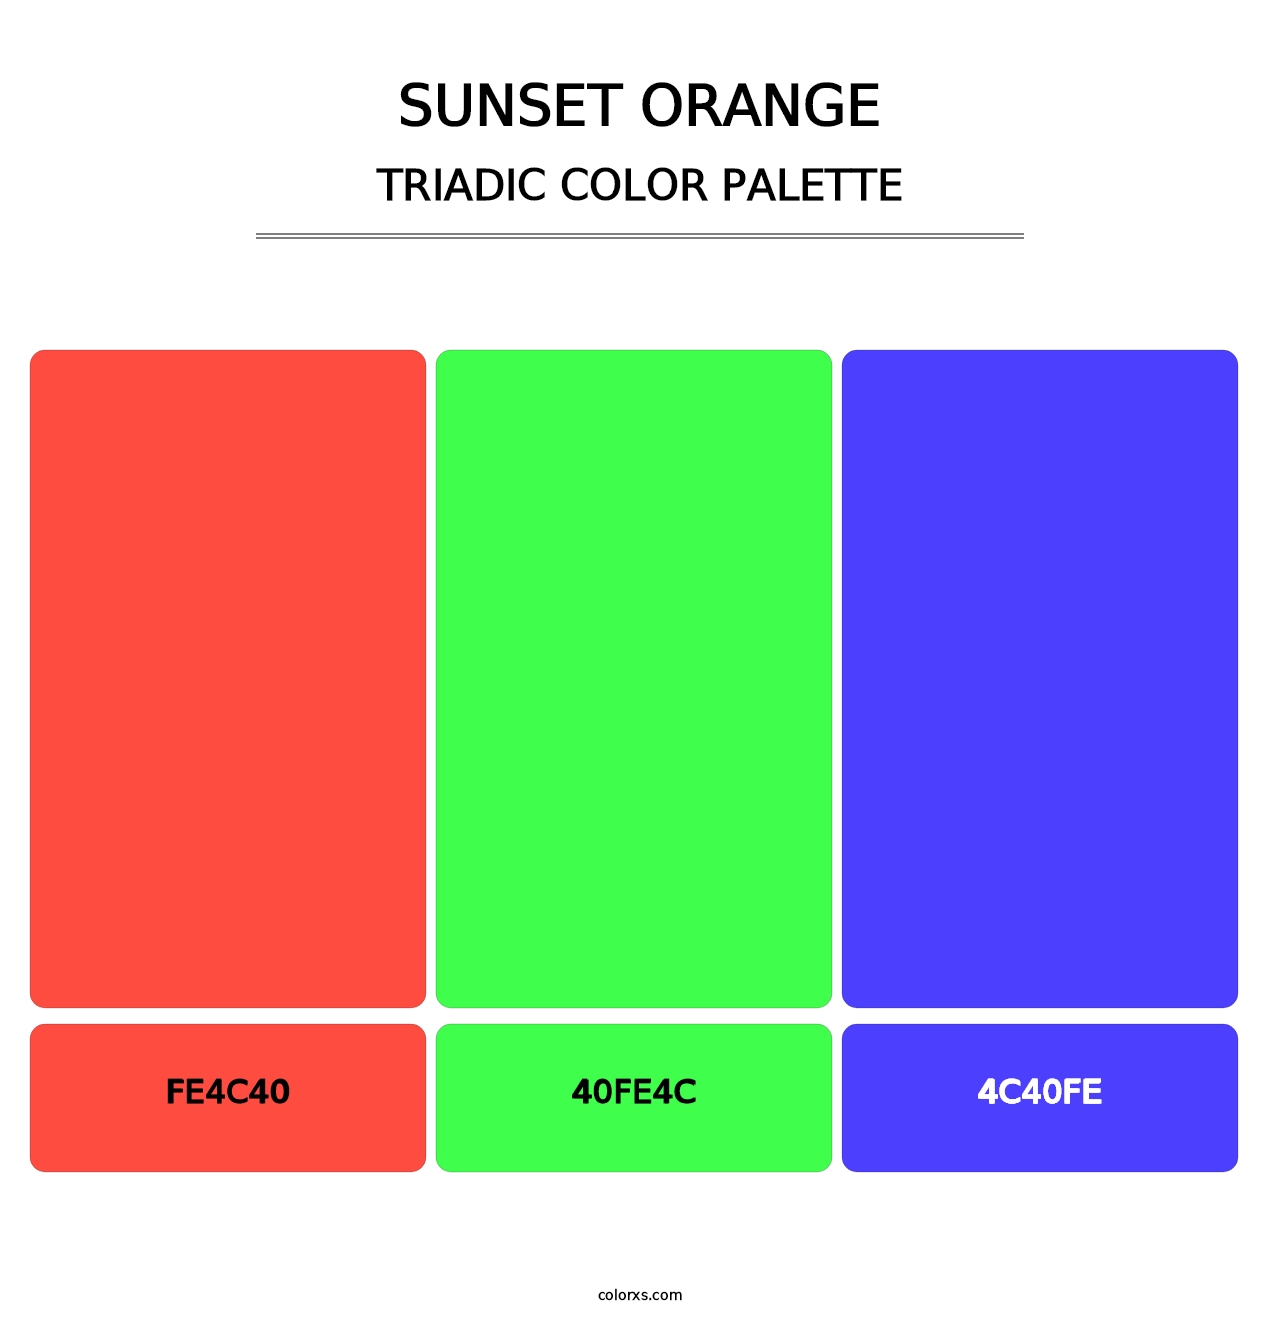 Sunset Orange - Triadic Color Palette